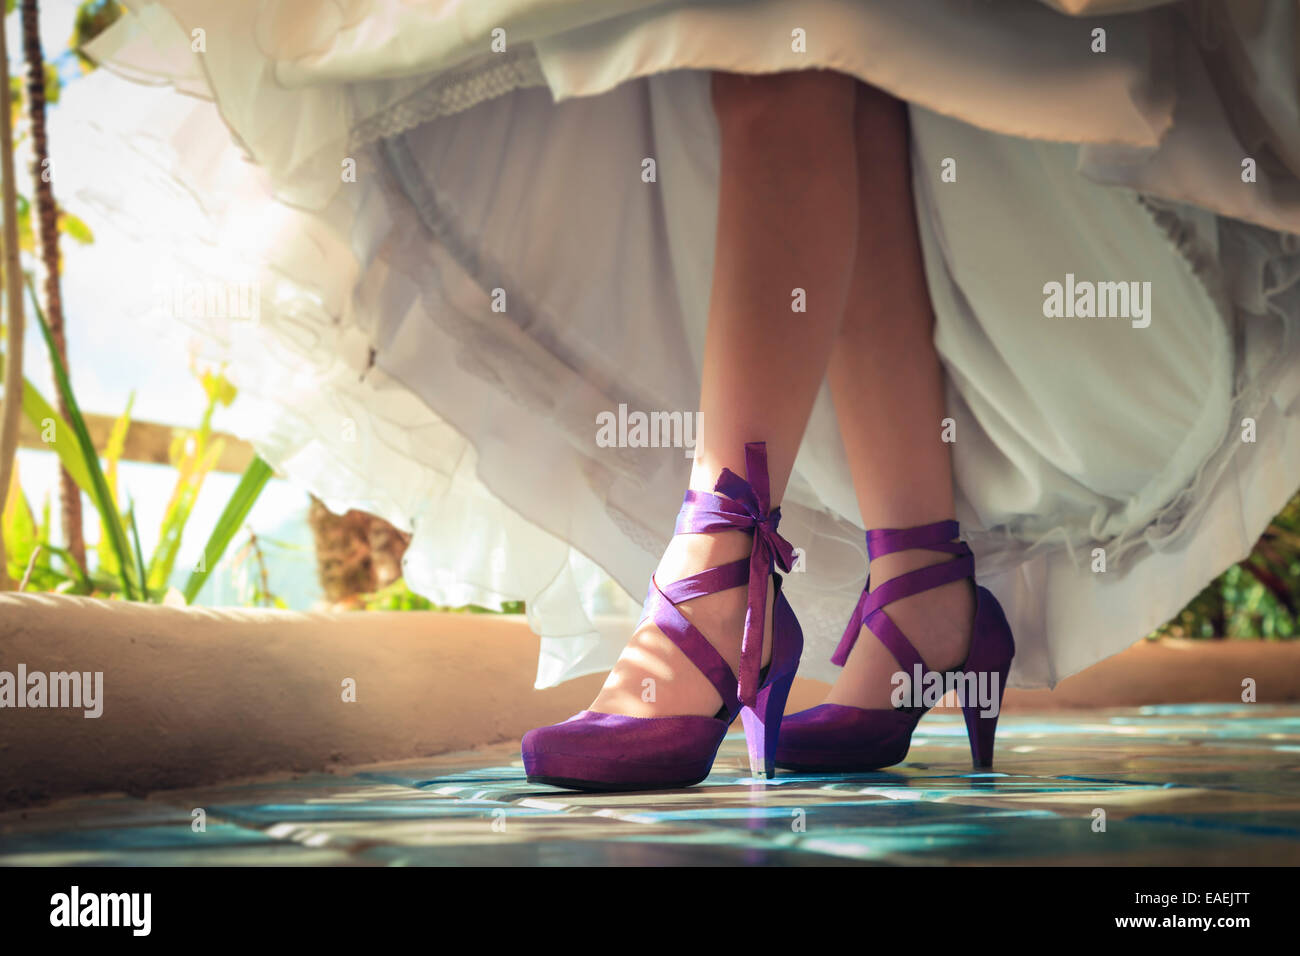 Scarpe viola immagini e fotografie stock ad alta risoluzione - Alamy